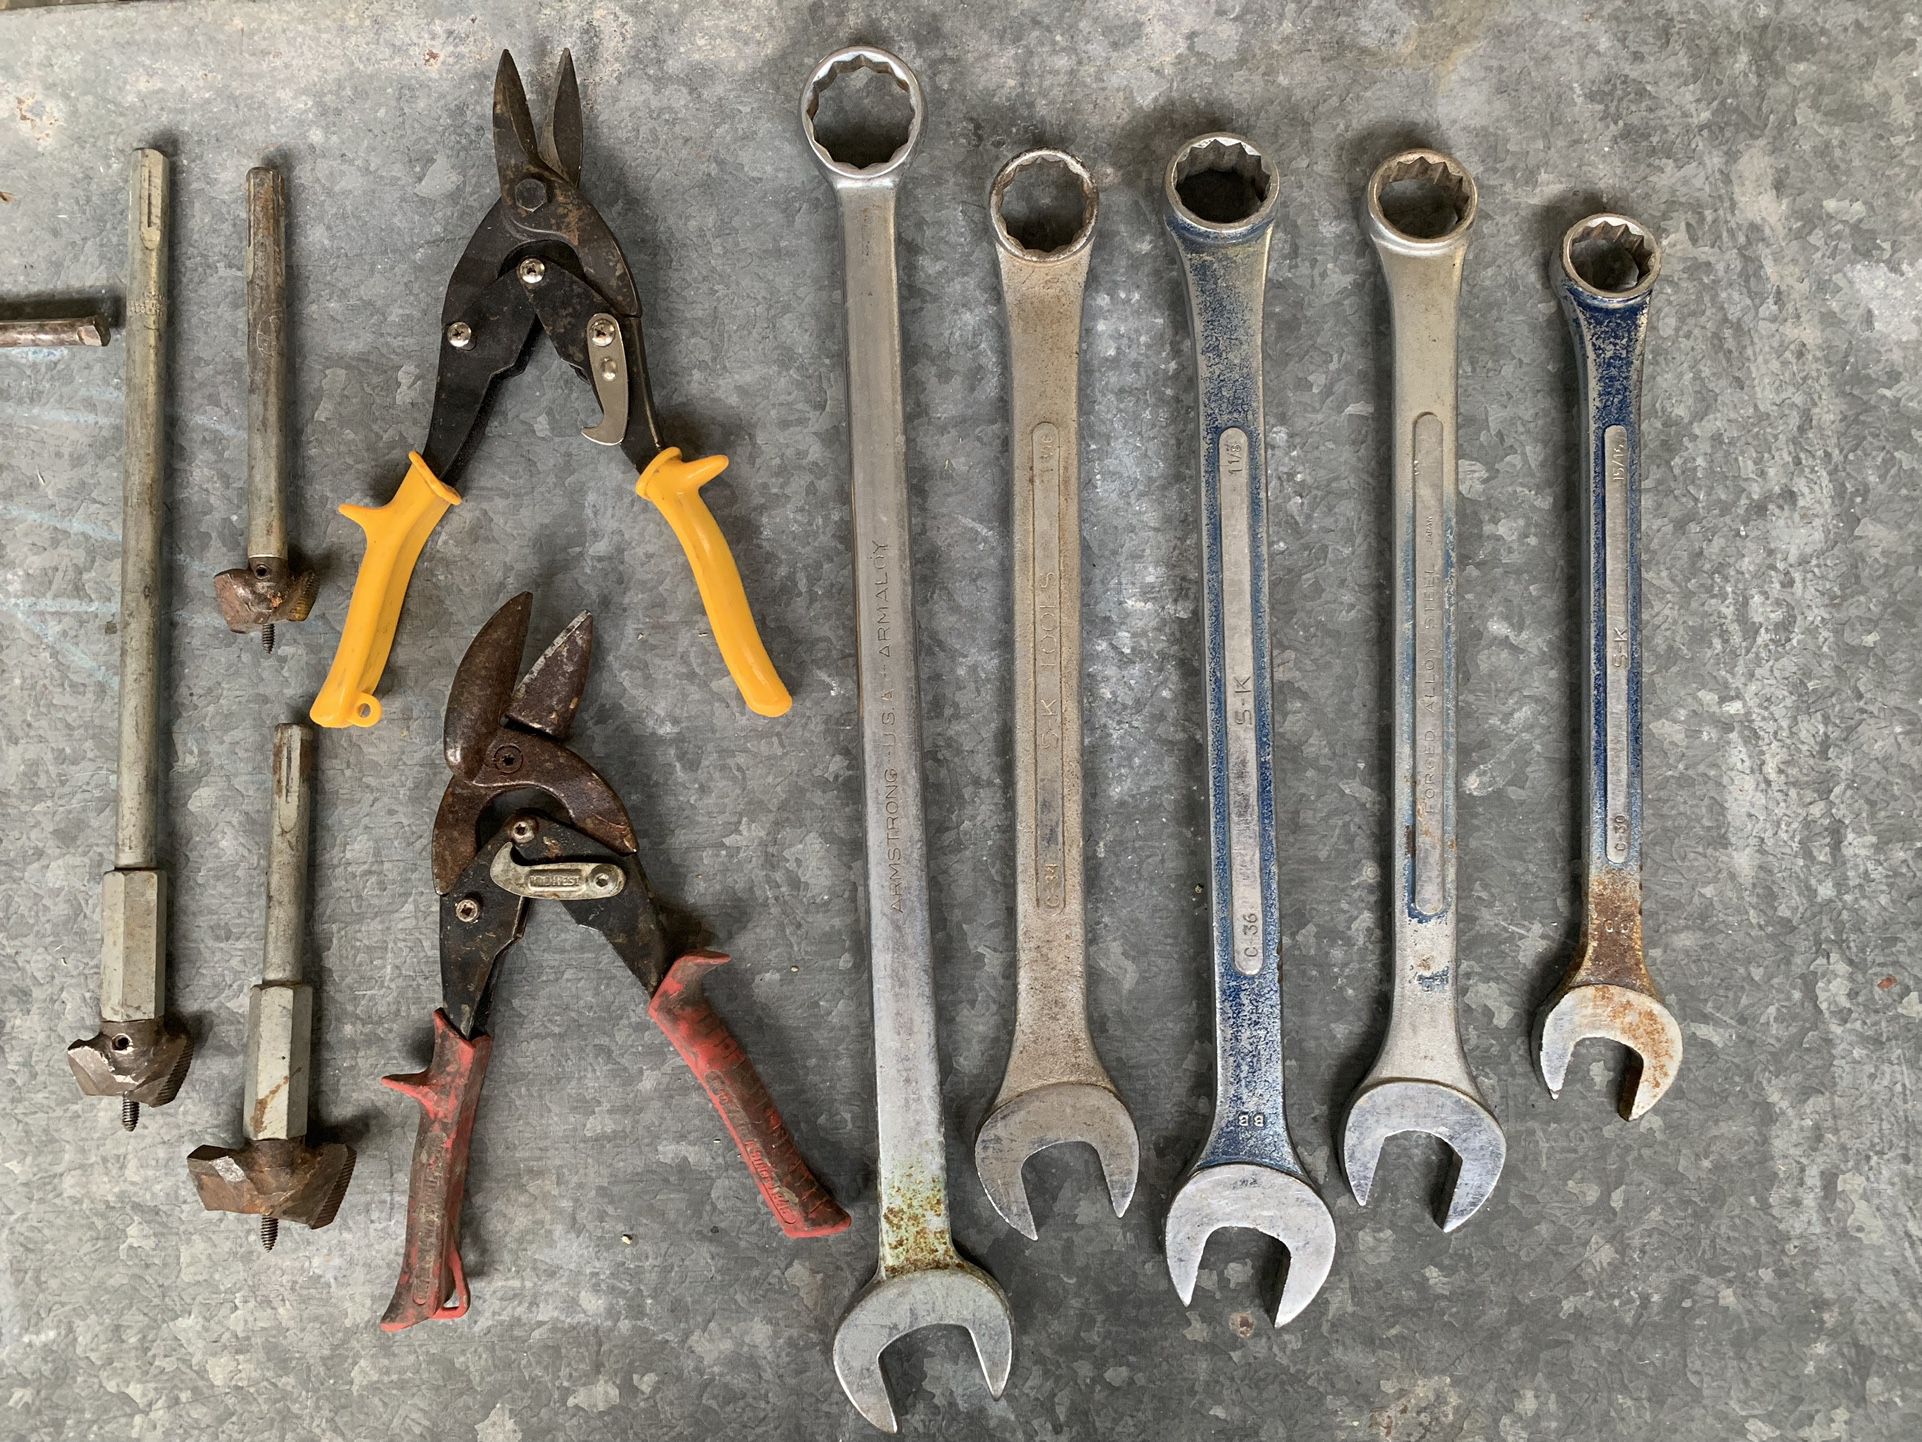 Plumbing Tools - 17 Pieces 